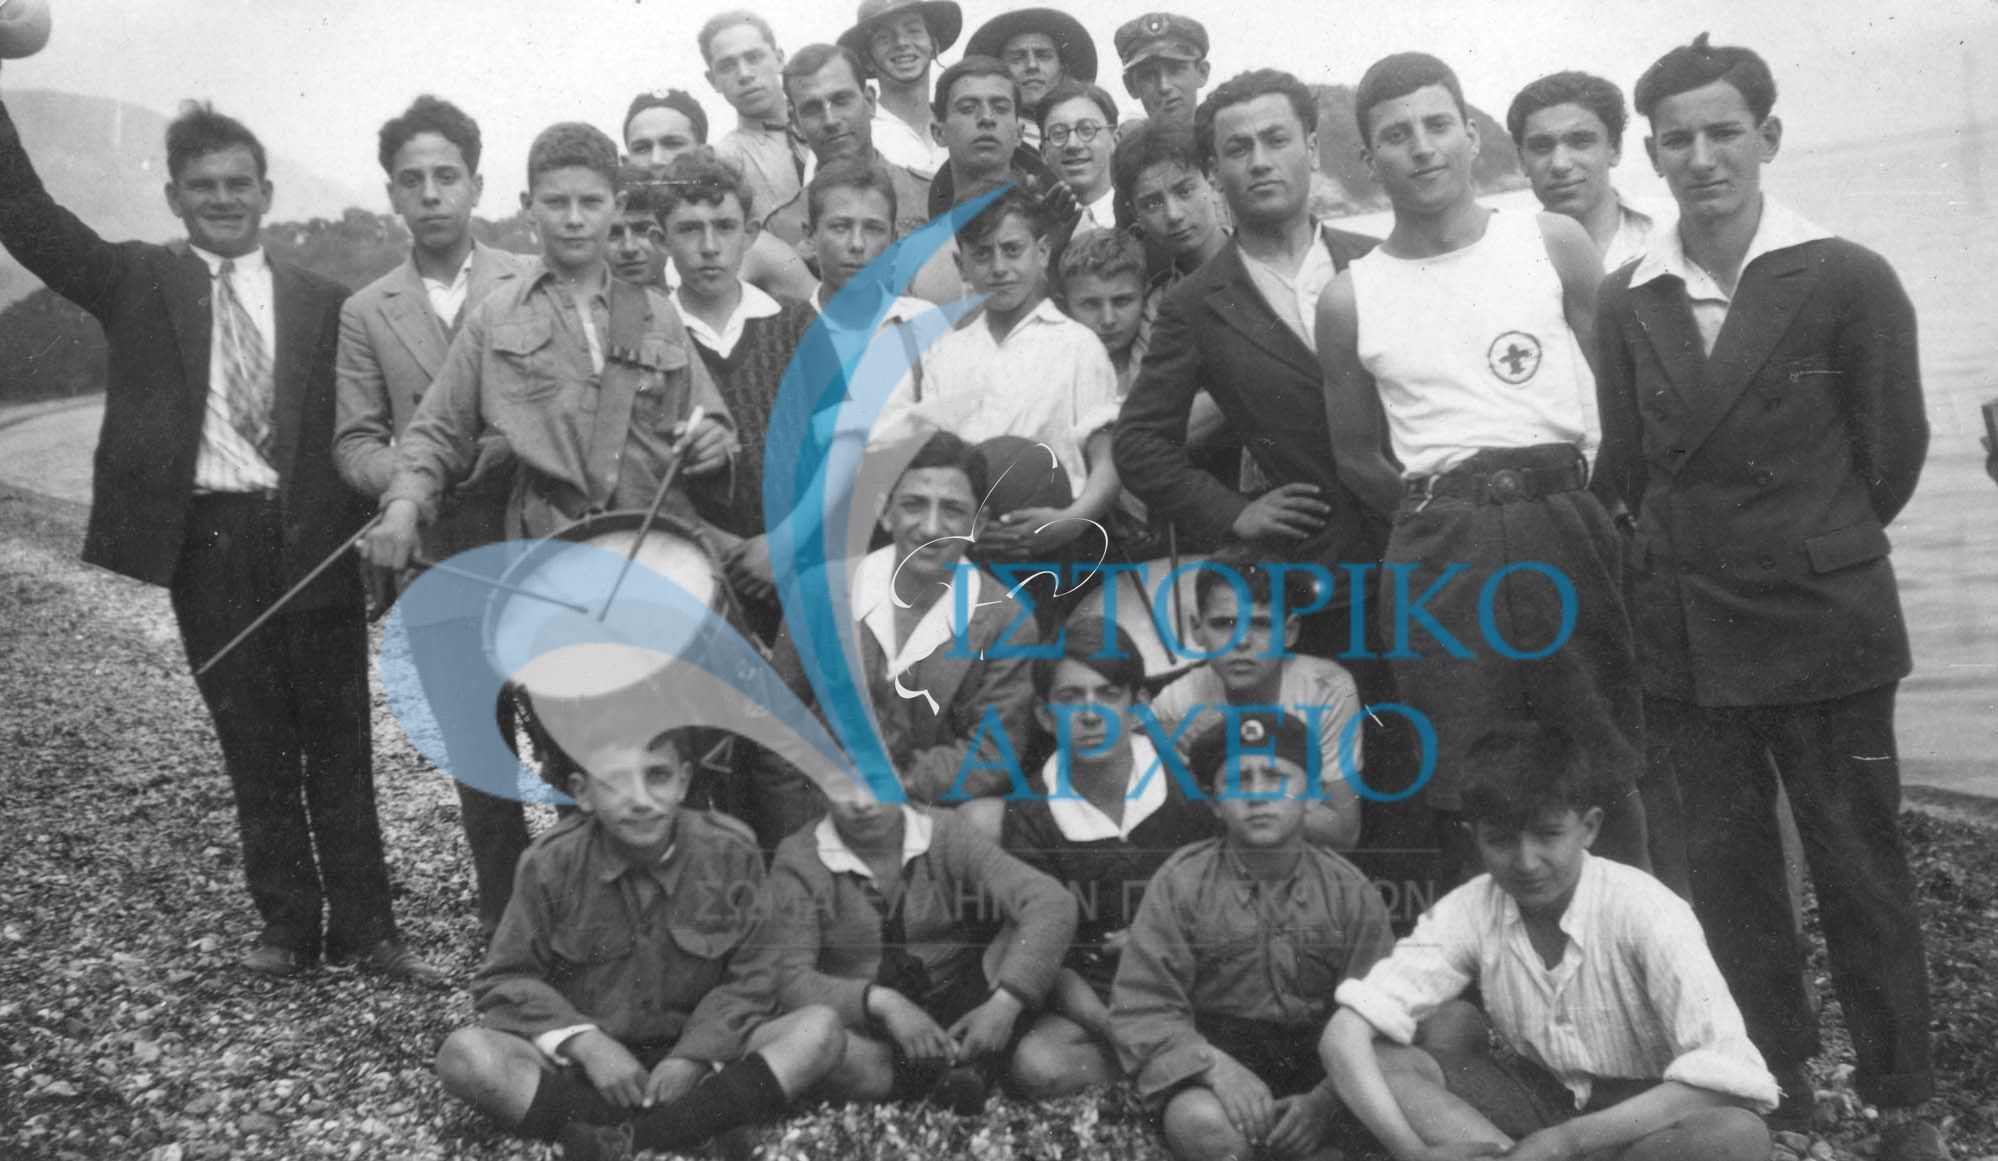 Η 2η Ομάδα Προσκόπων Κέρκυρας σε εκδρομή στη Δασιά στις 14 Απρίλιου του 1929